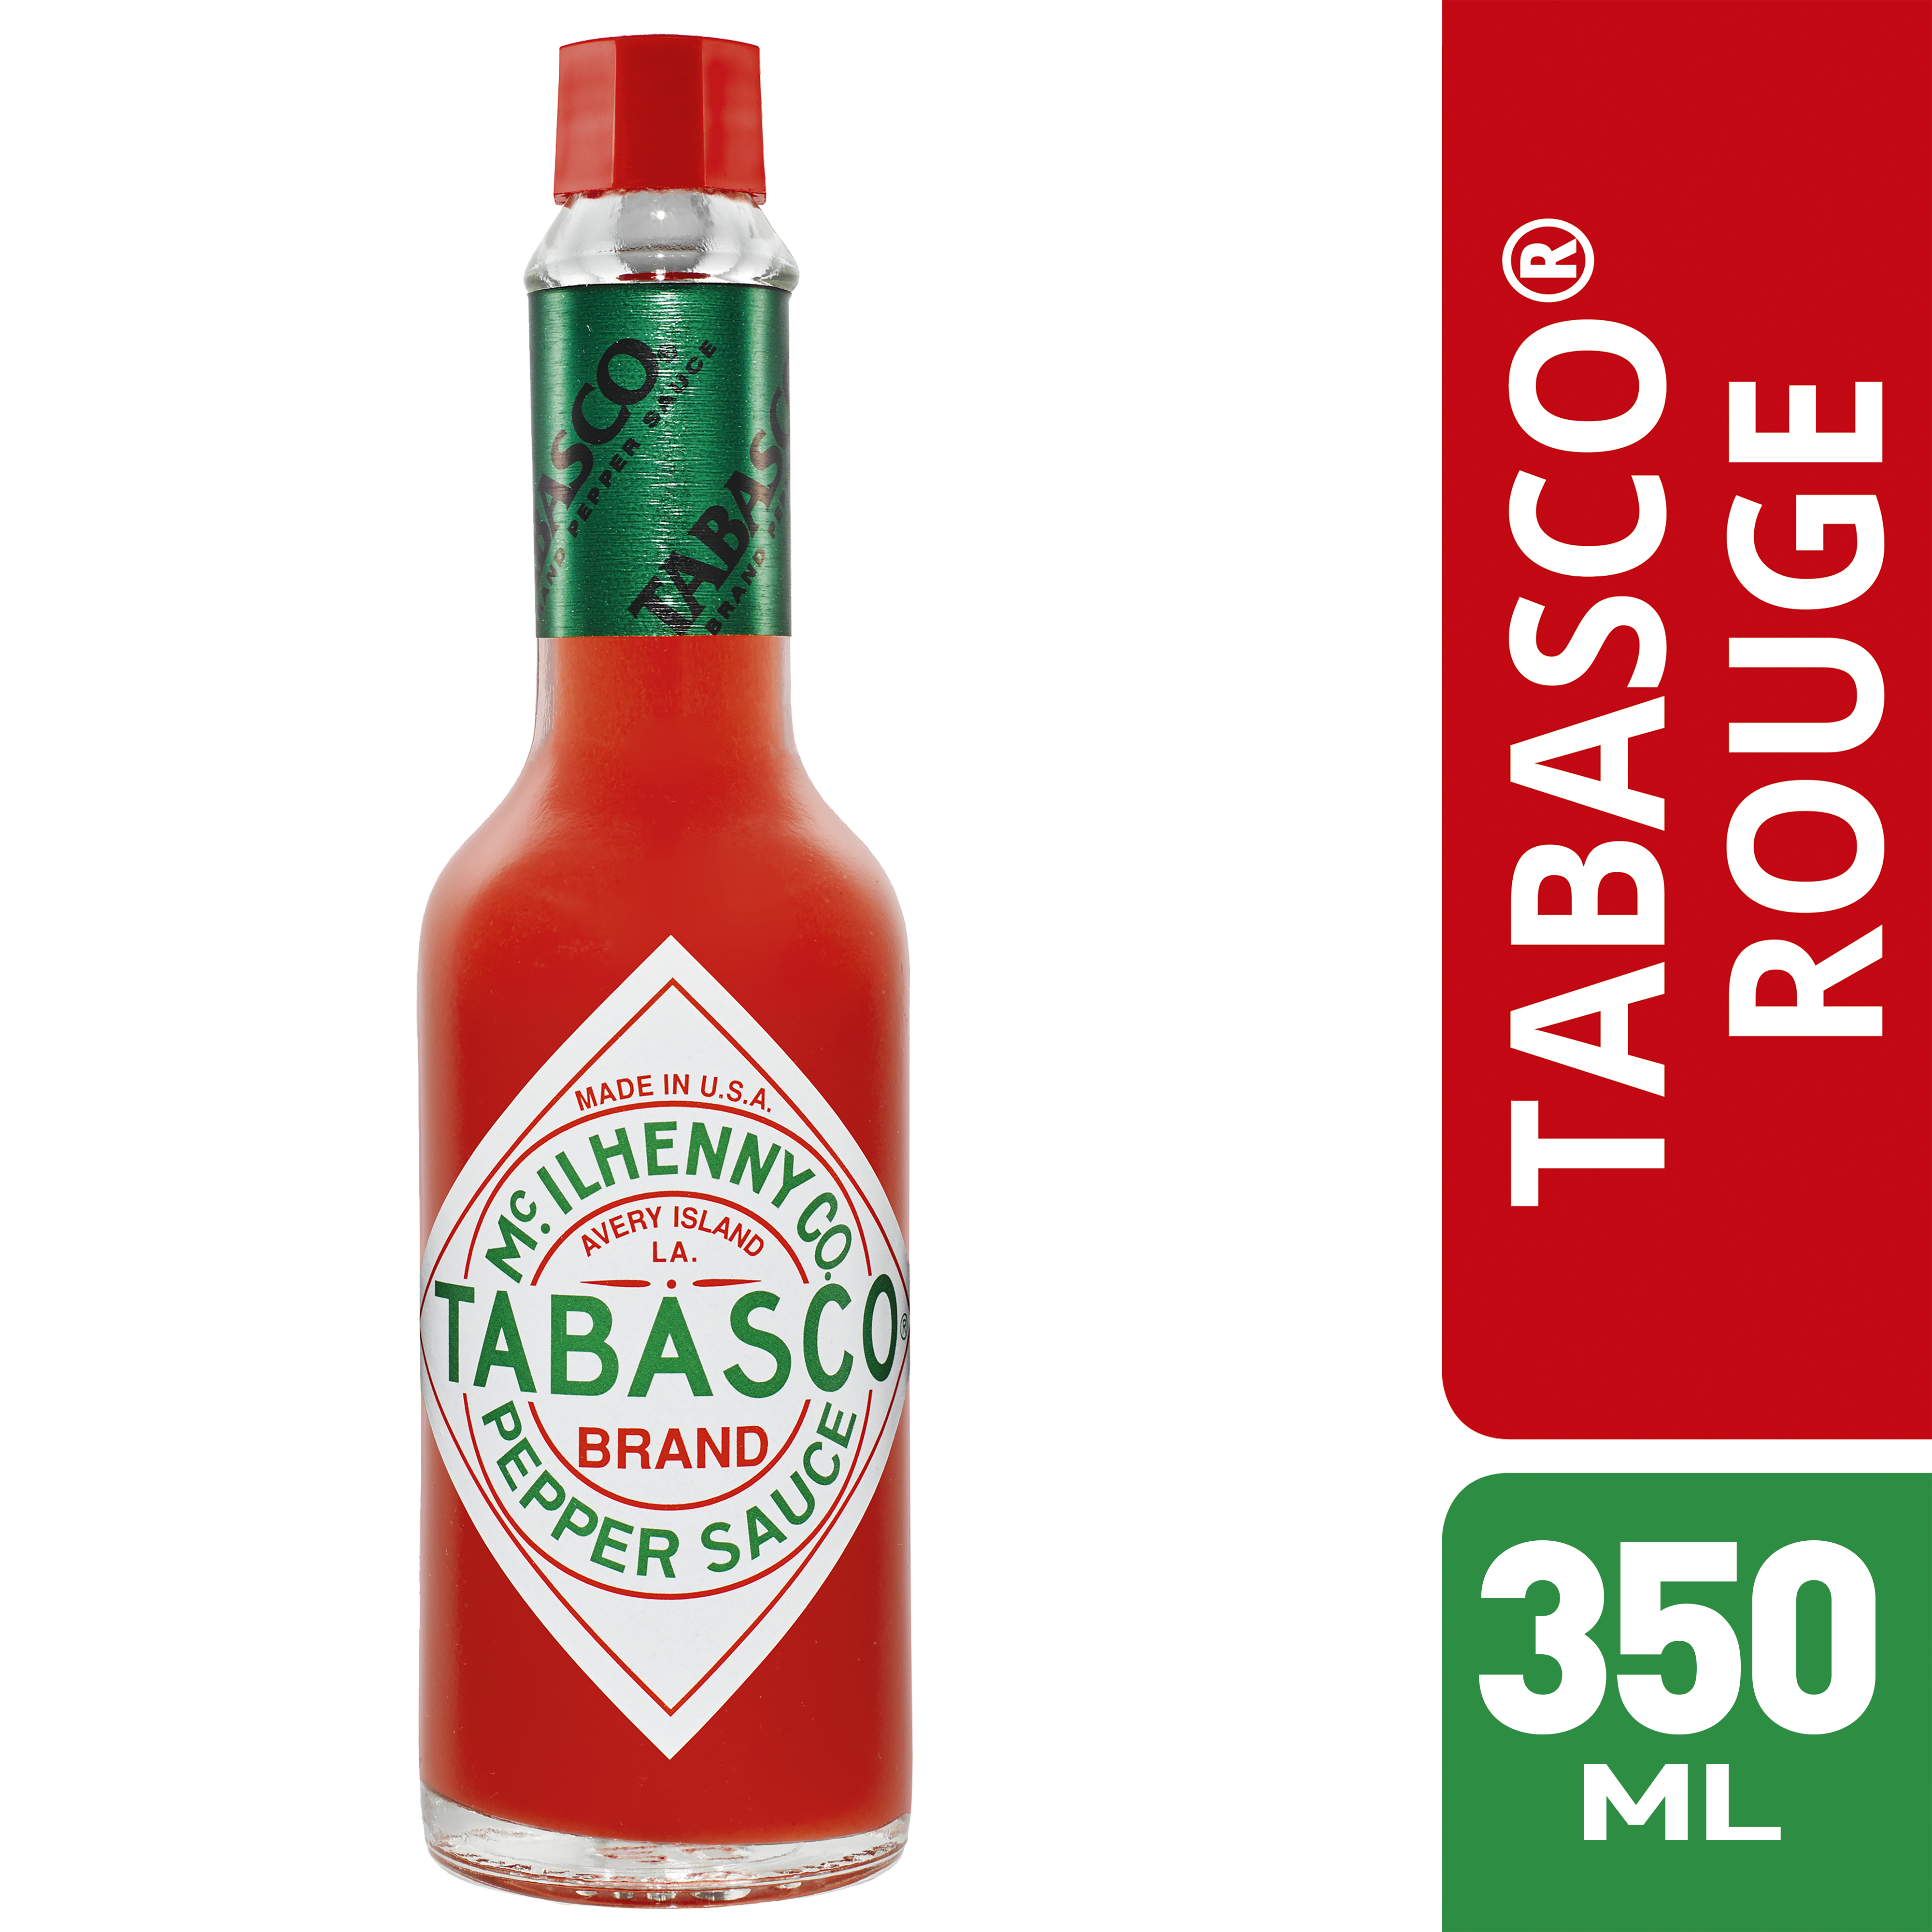 TABASCO ® Rouge 350ml - 